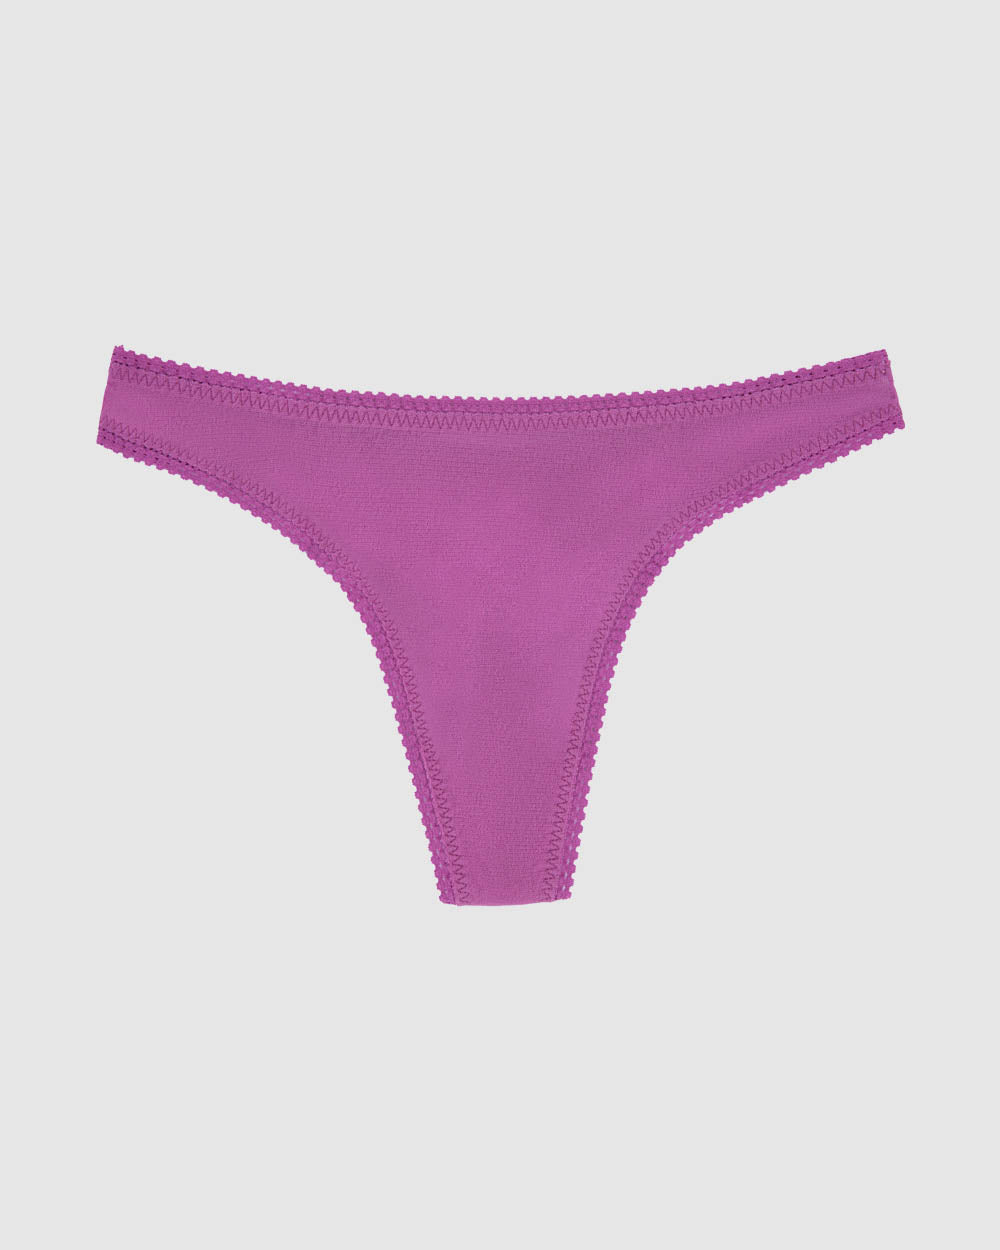 A striking purple gossamer mesh hip g underwear.